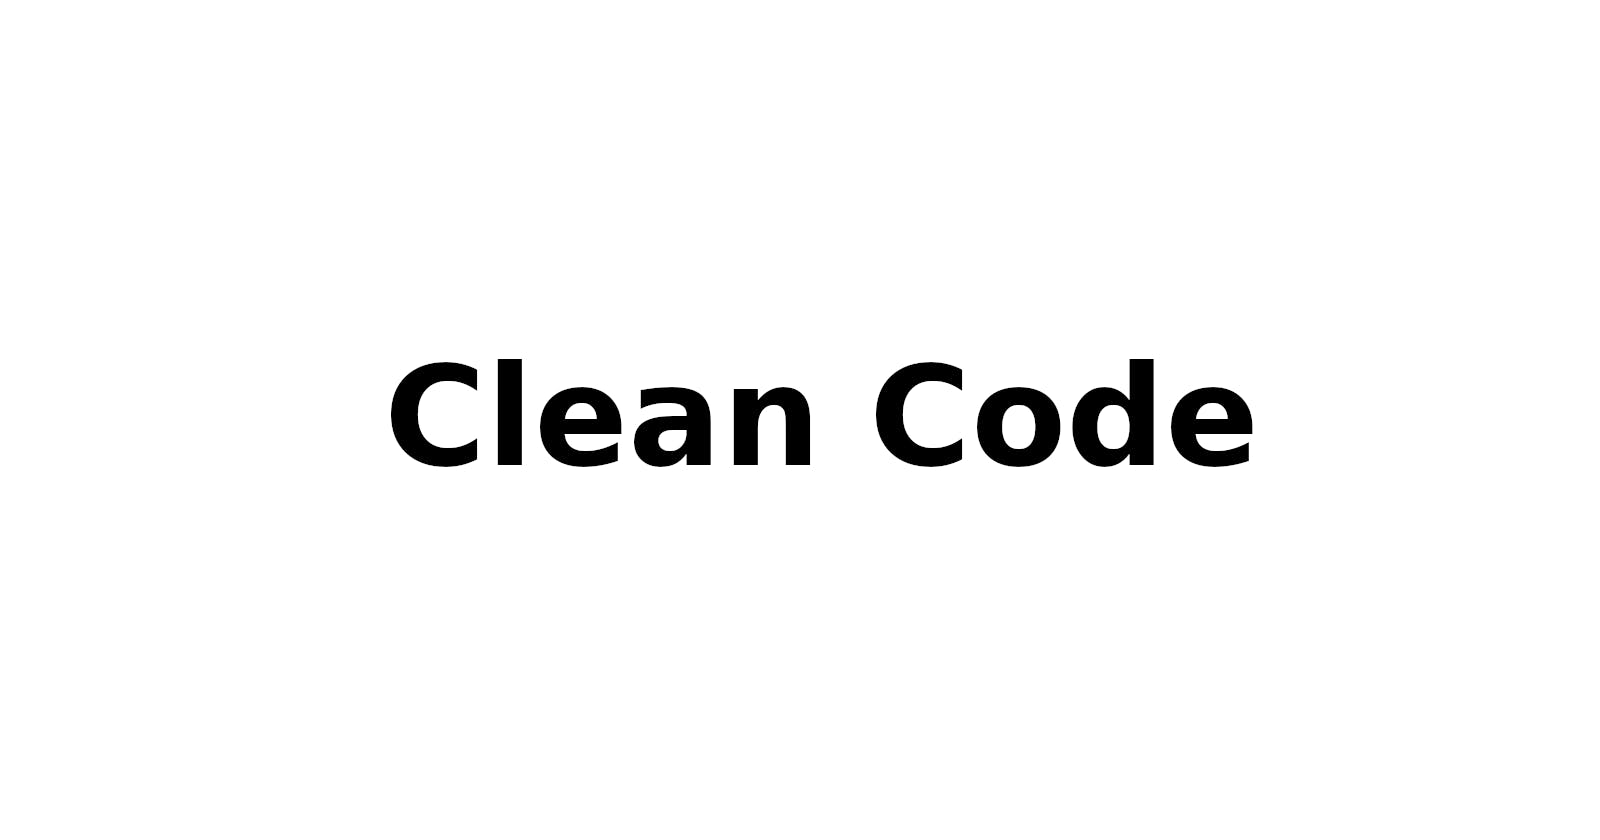 How to write good code?